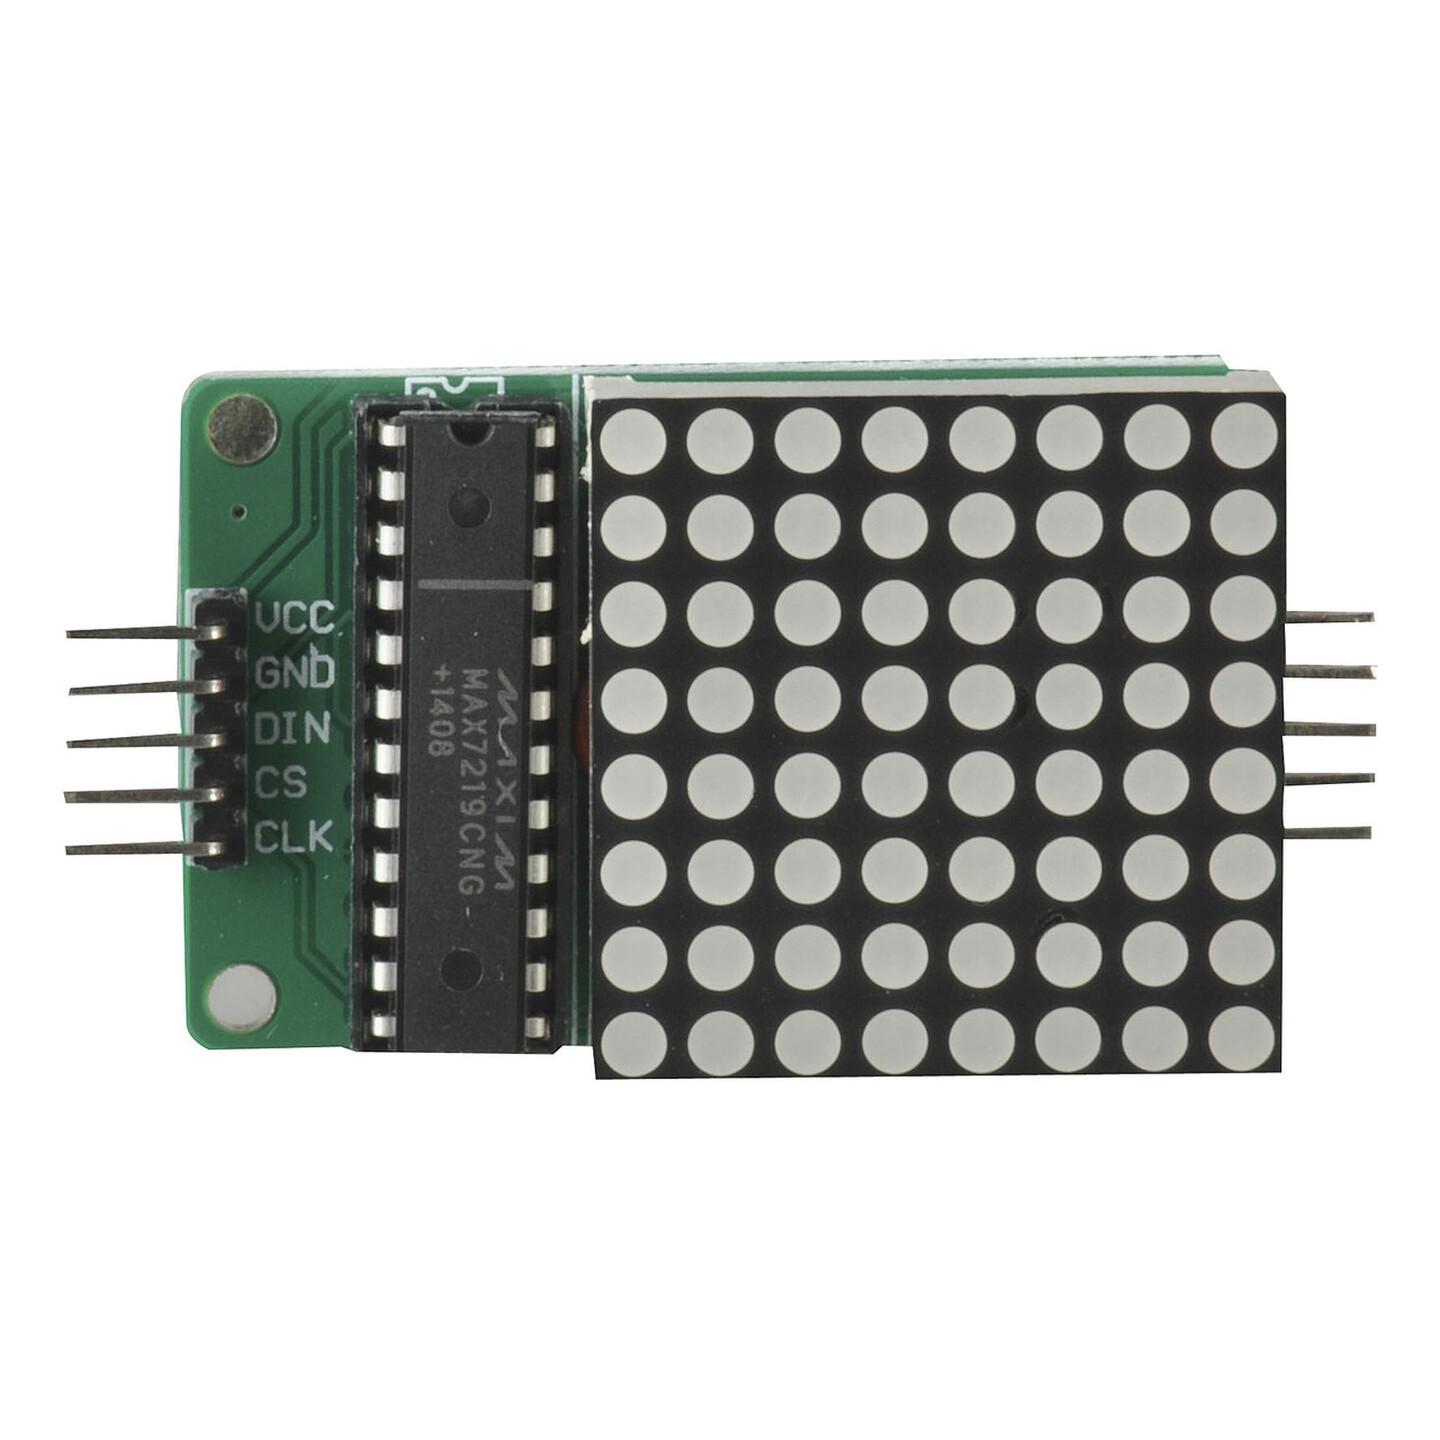 Duinotech Arduino Compatible 8 x 8 LED Dot Matrix Display